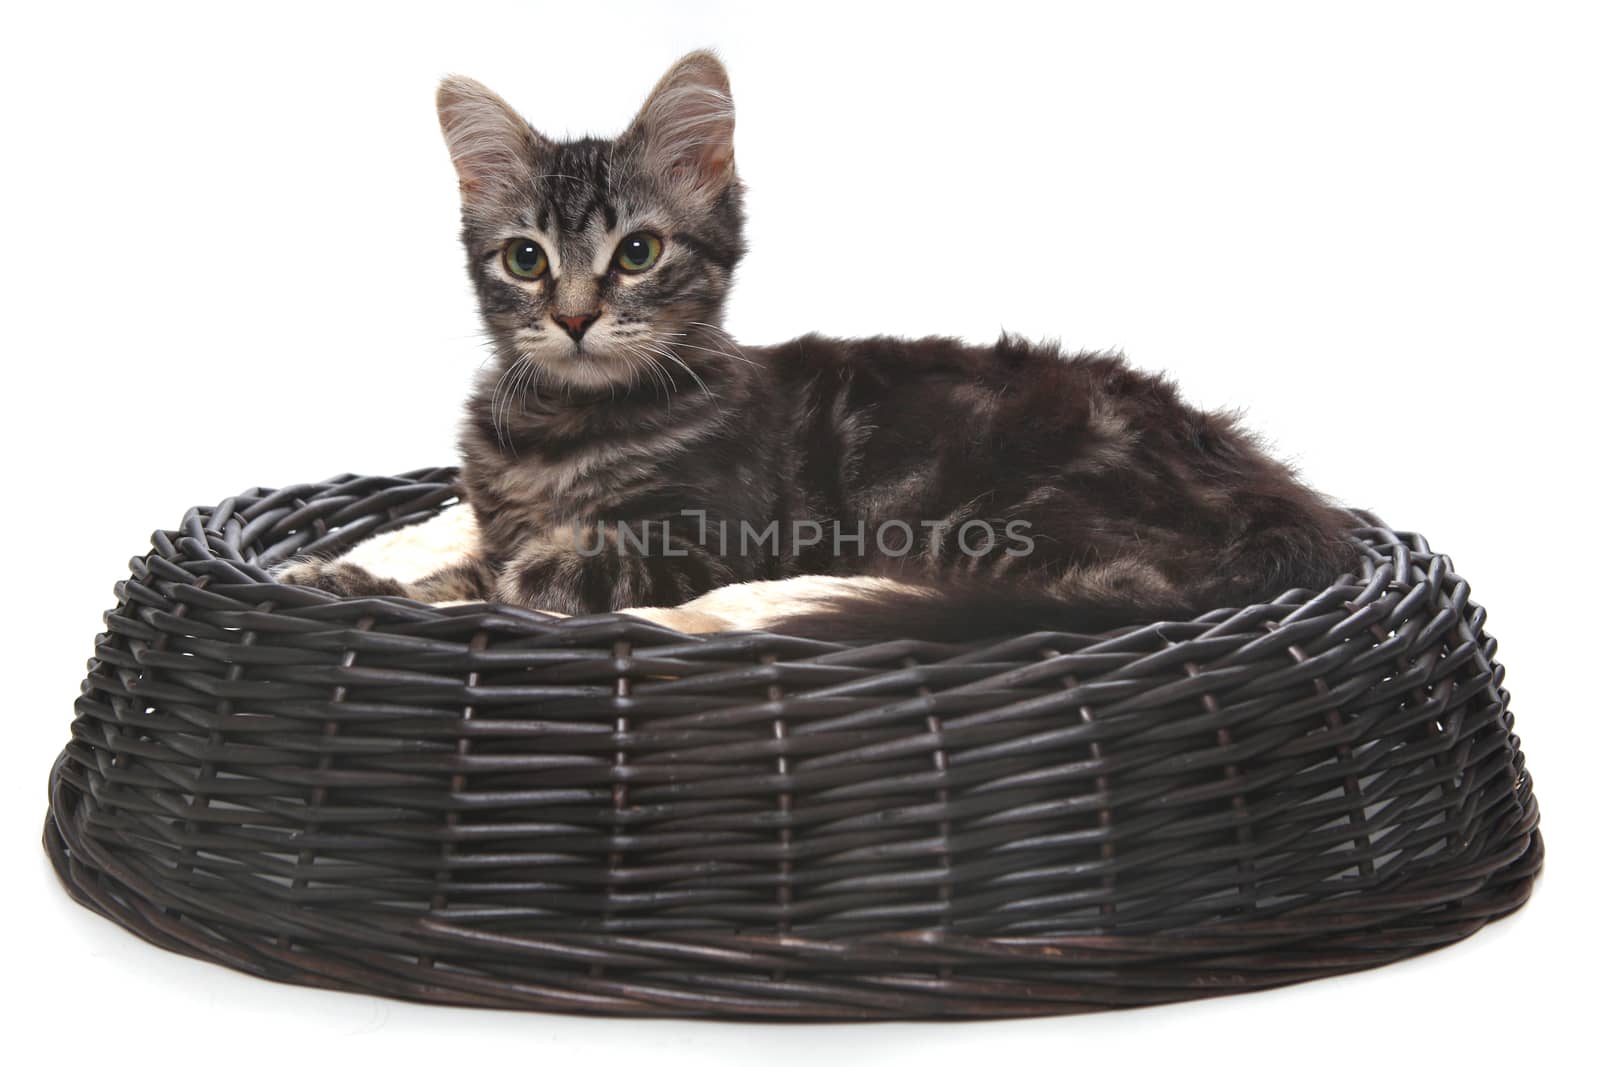 Little kitten in a cat bed  by tobkatrina